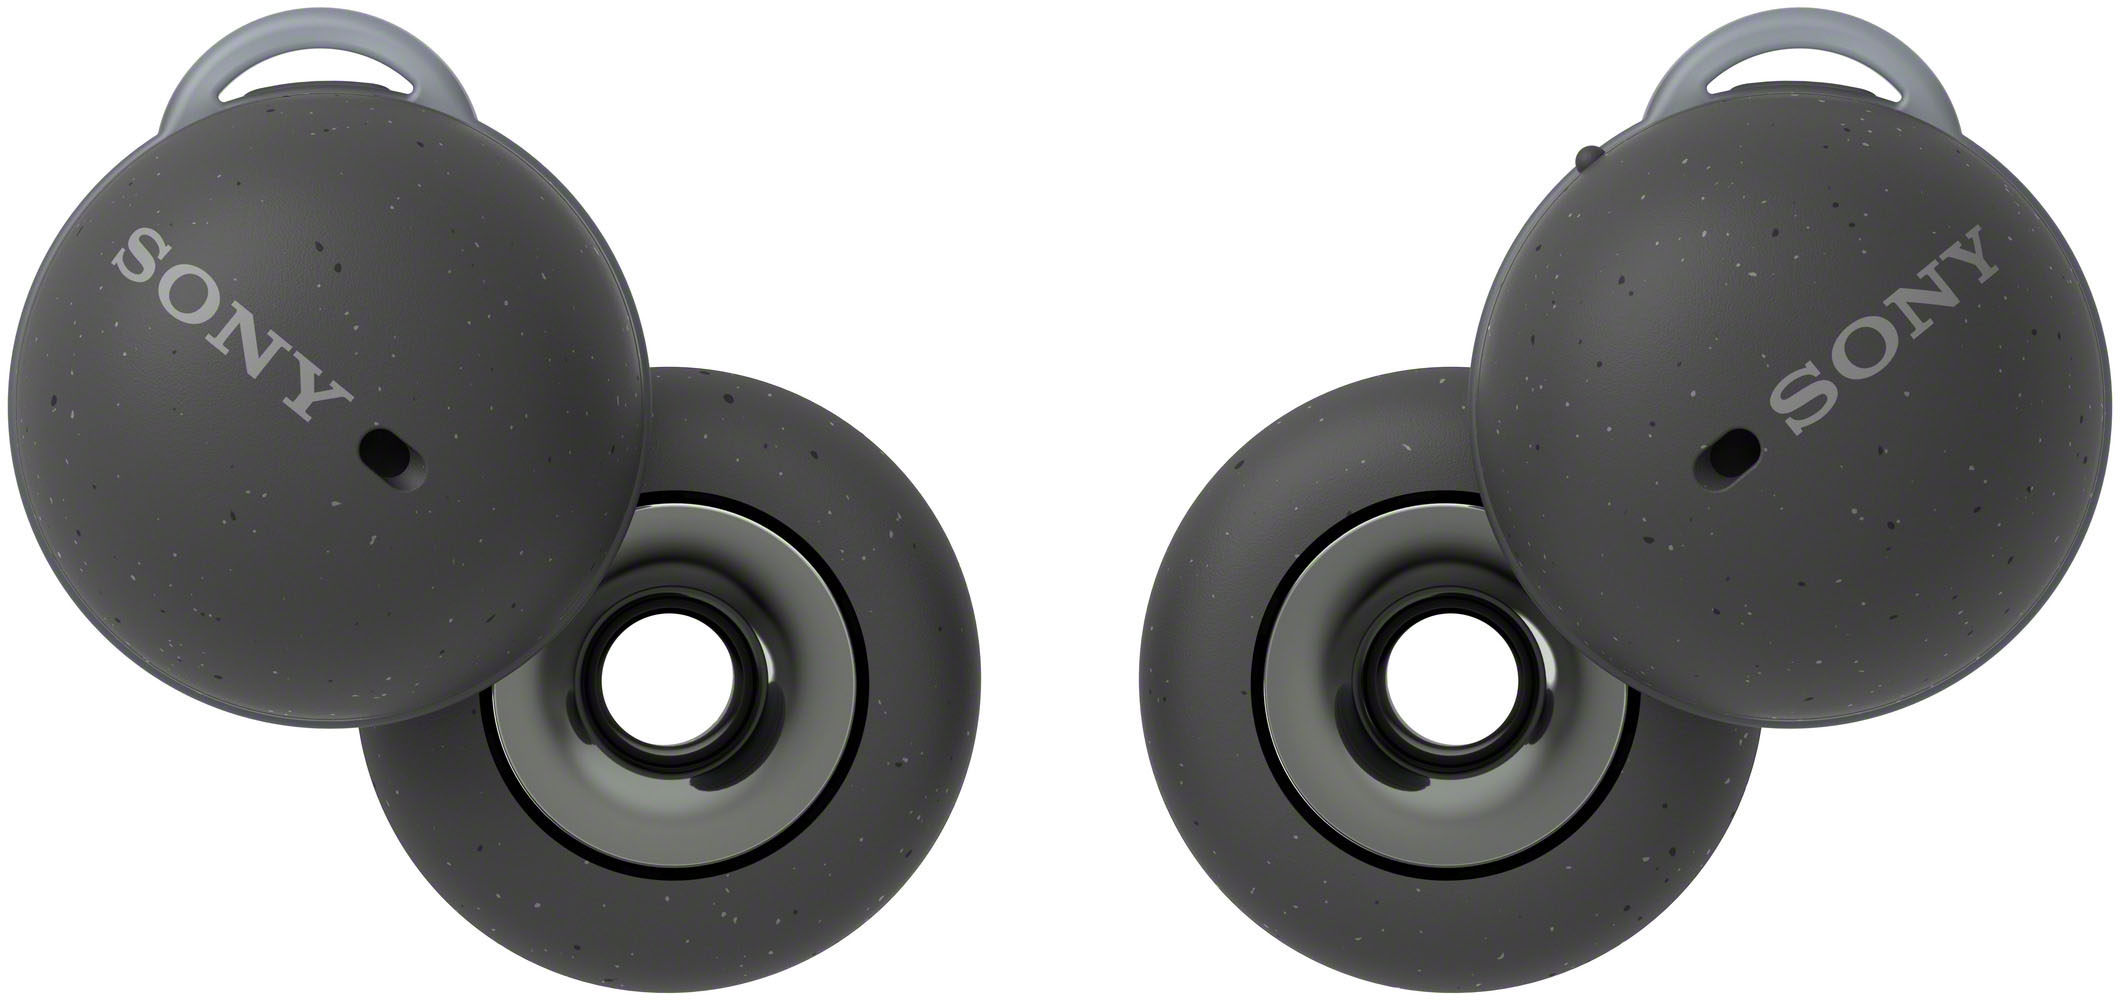 Sony LinkBuds True Wireless Open-Ear Earbuds Dark Gray WFL900/H 